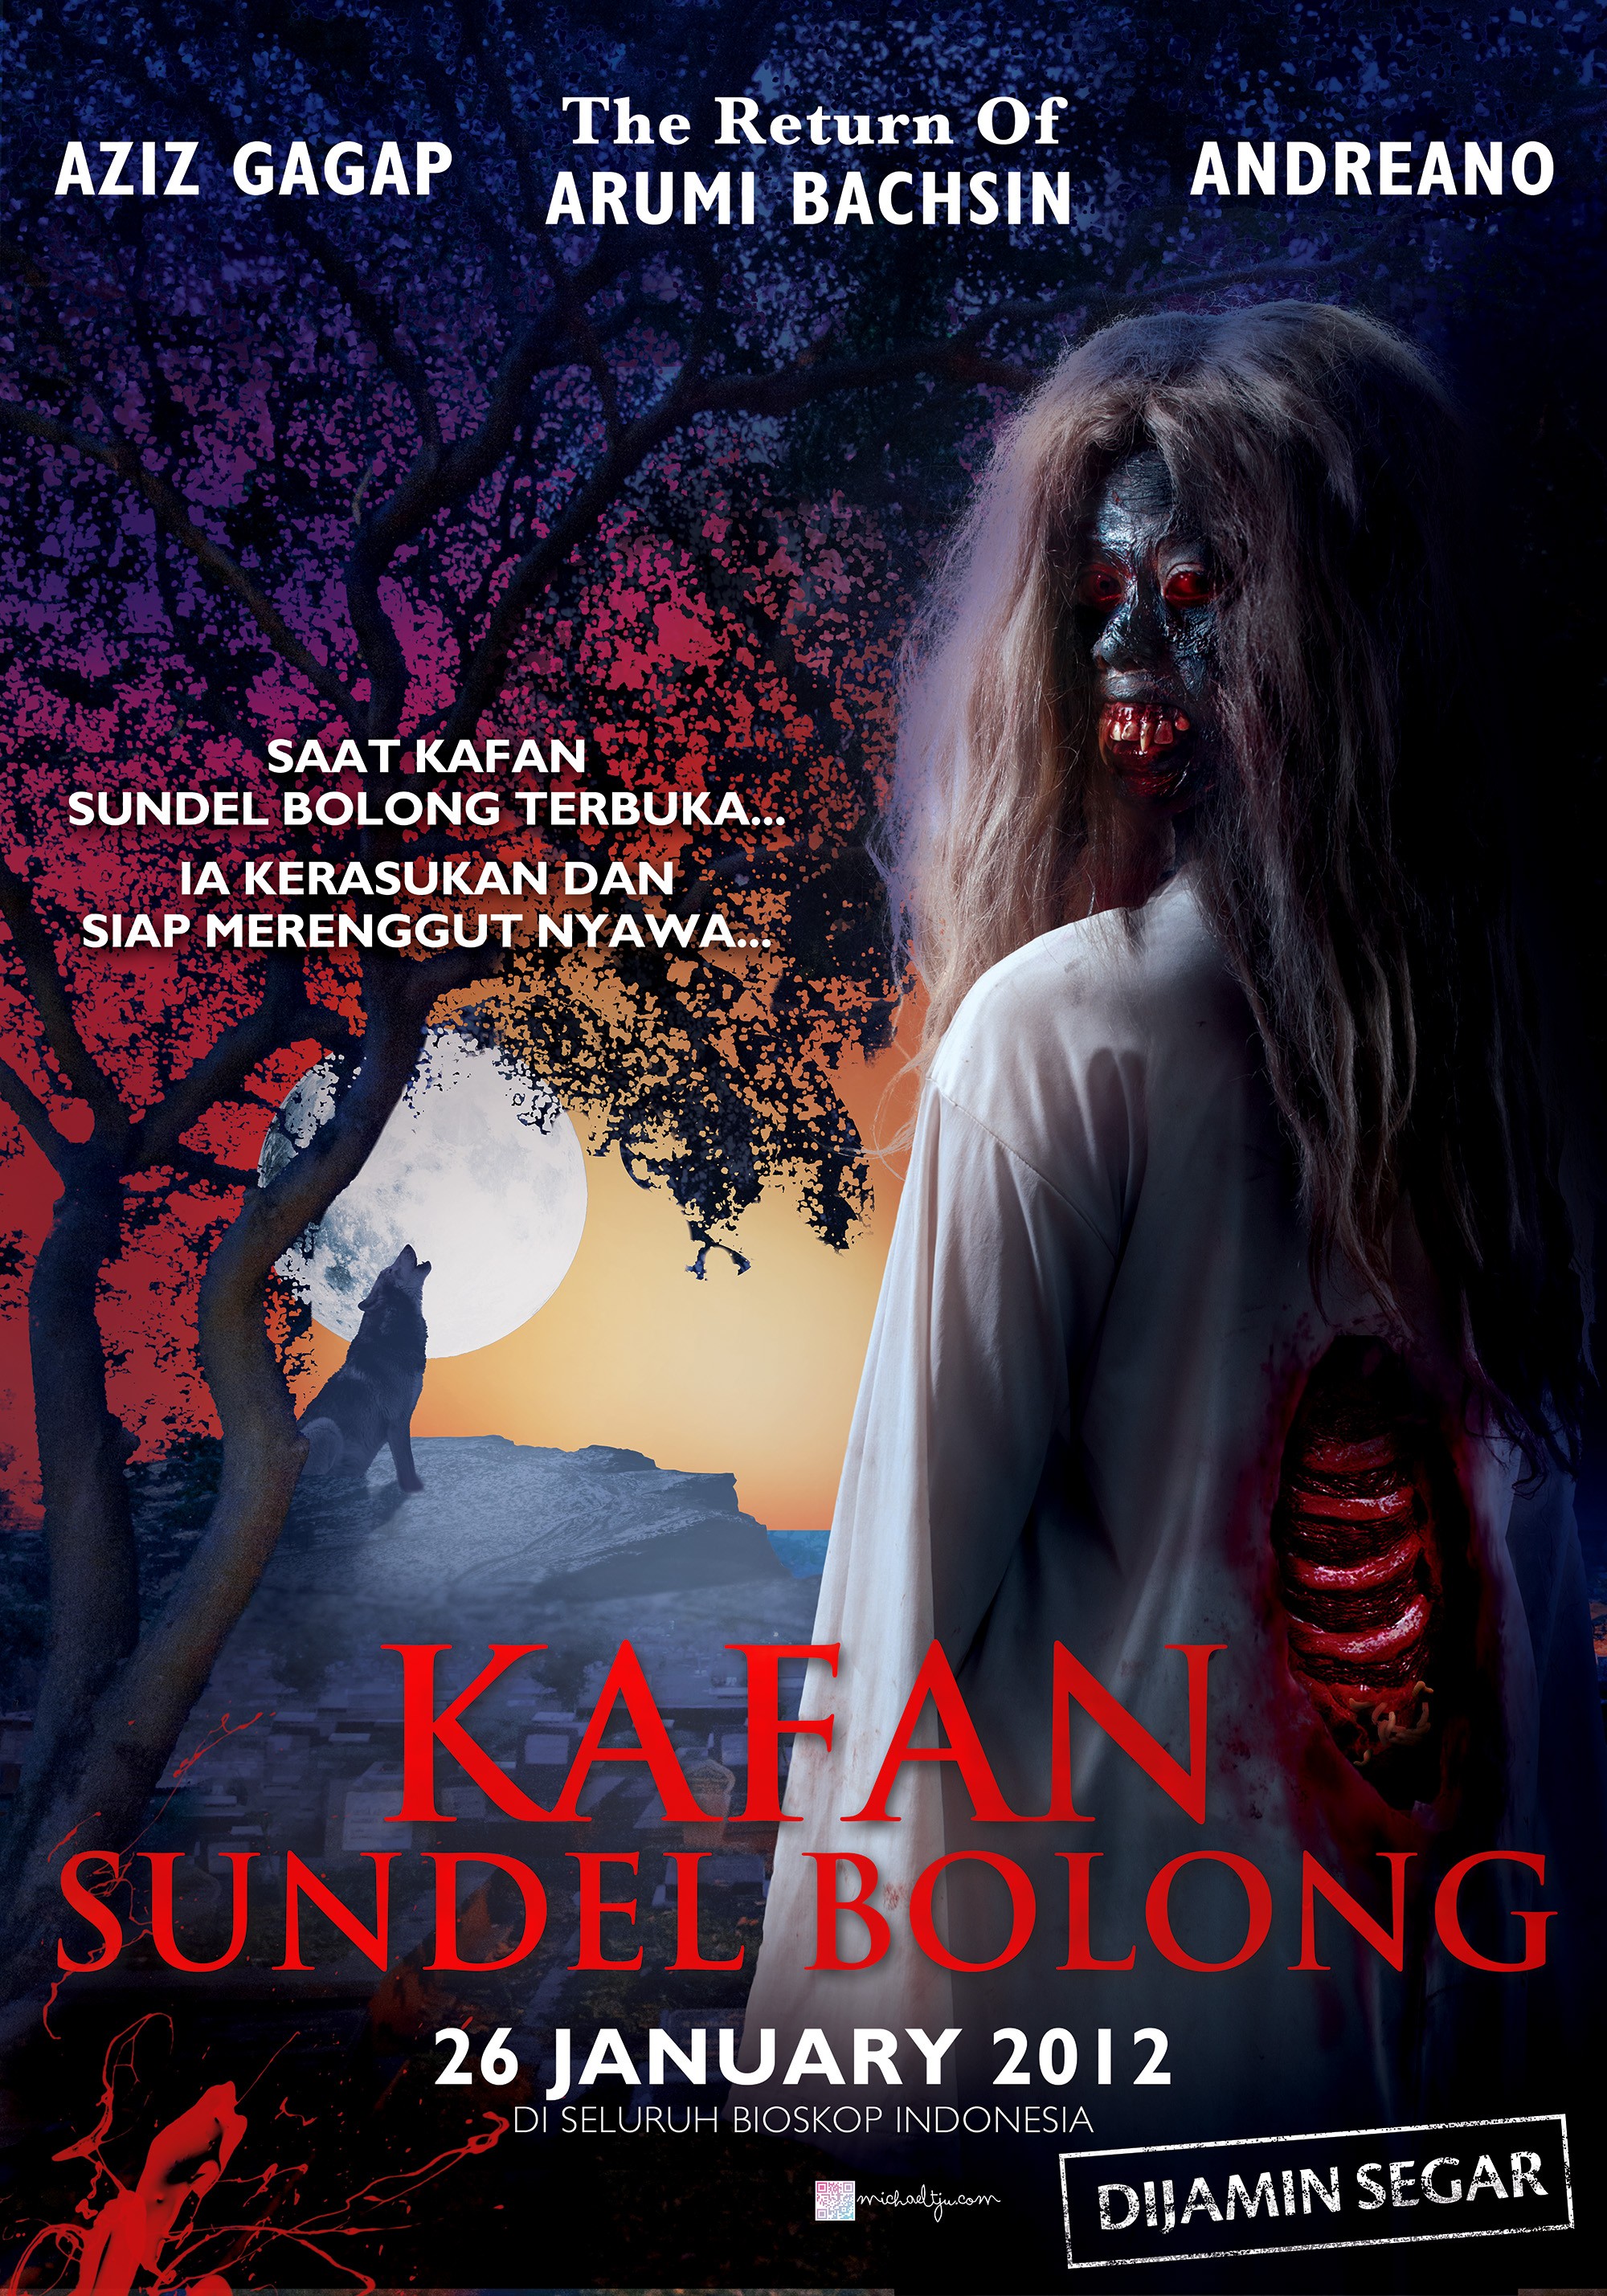 Mega Sized Movie Poster Image for Kafan sundel bolong 